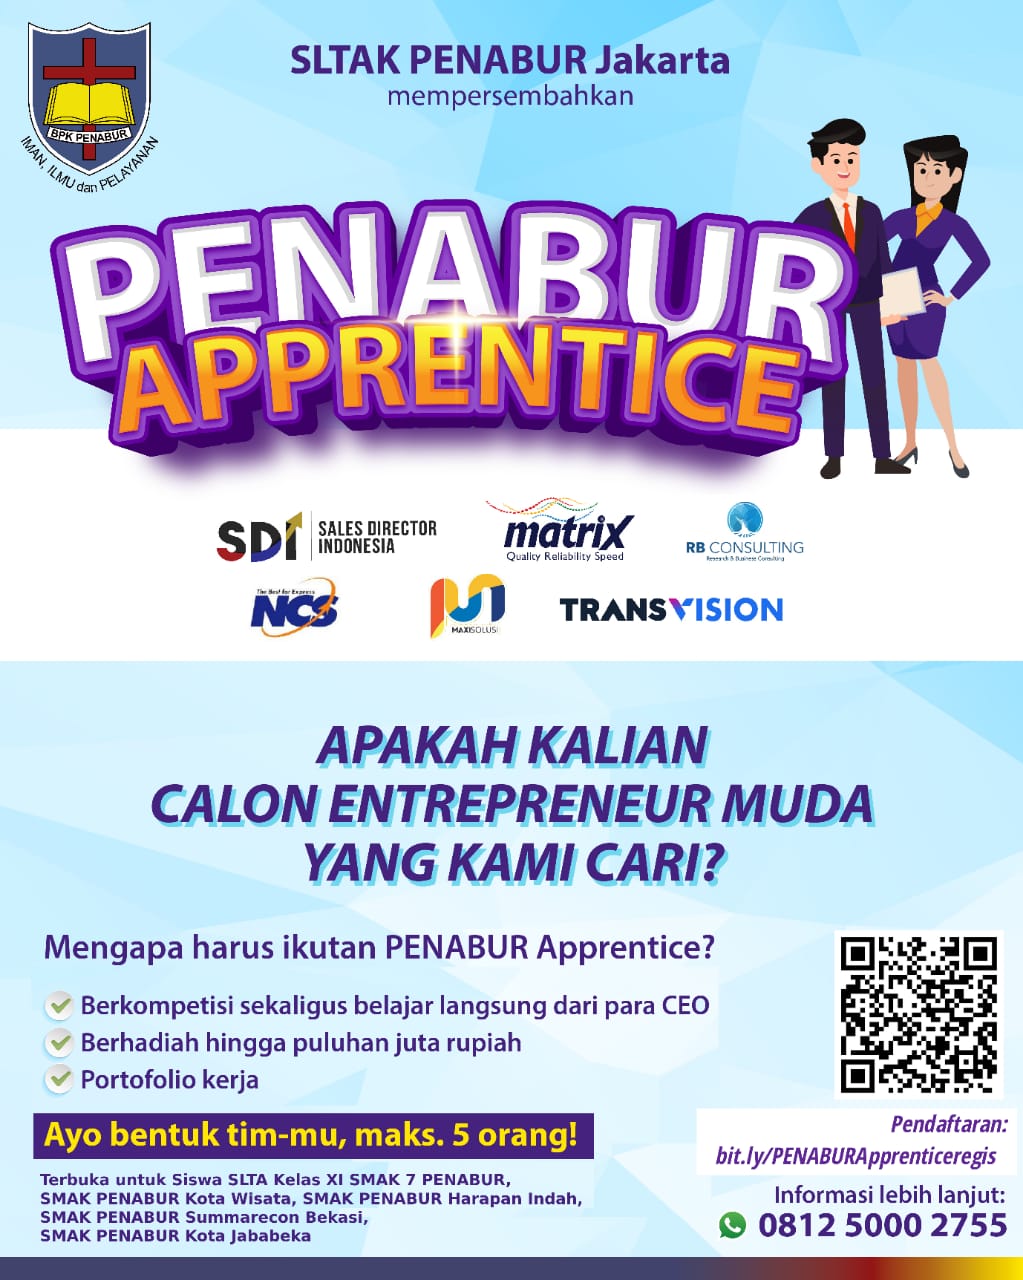 SLTAK PENABUR Jakarta : PENABUR Apprentice